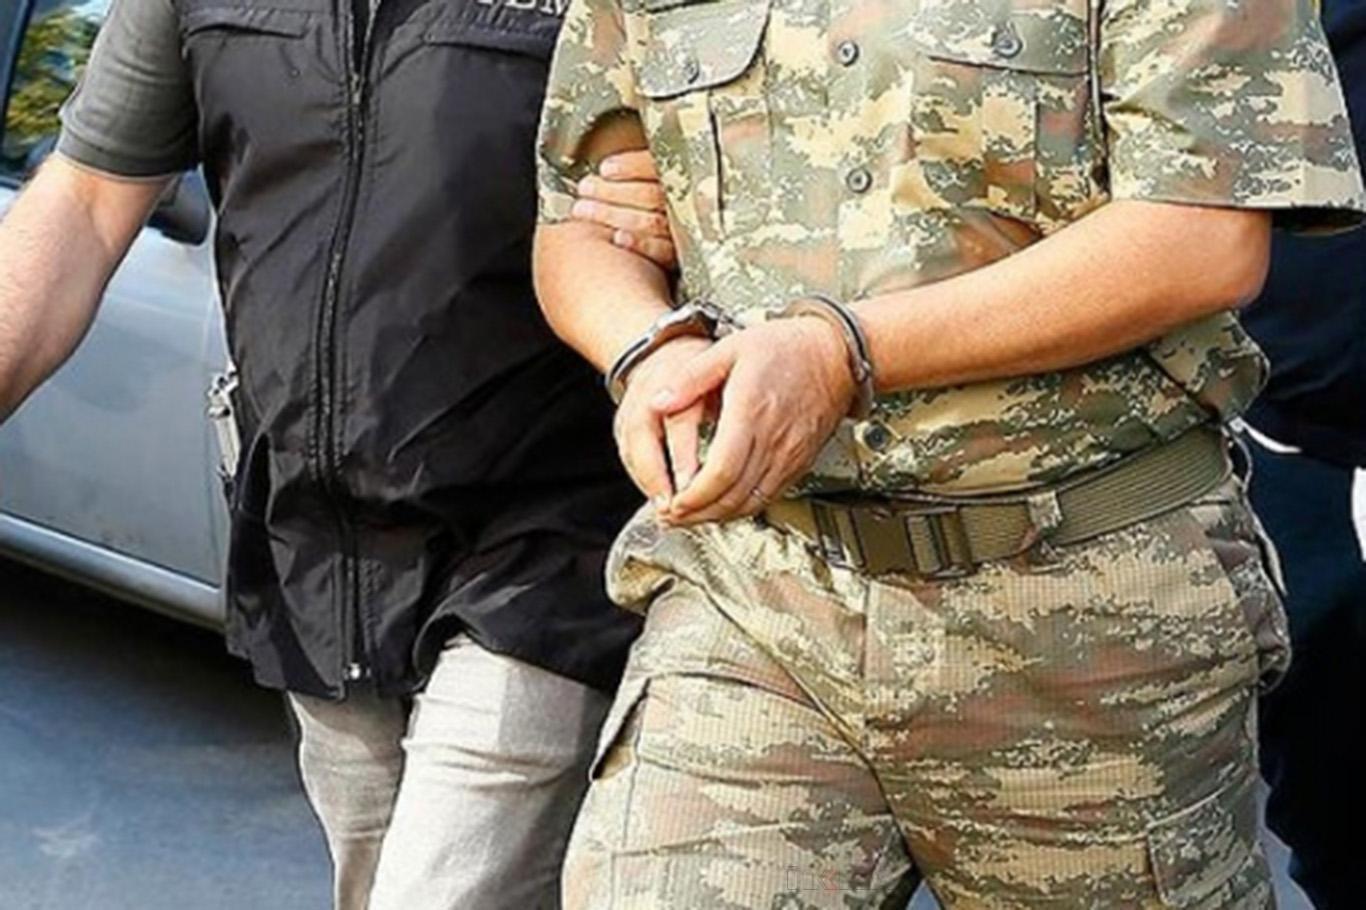 2 askerden 1i tutuklandı - Kırıkkale Haber, Son Dakika Kırıkkale Haberleri